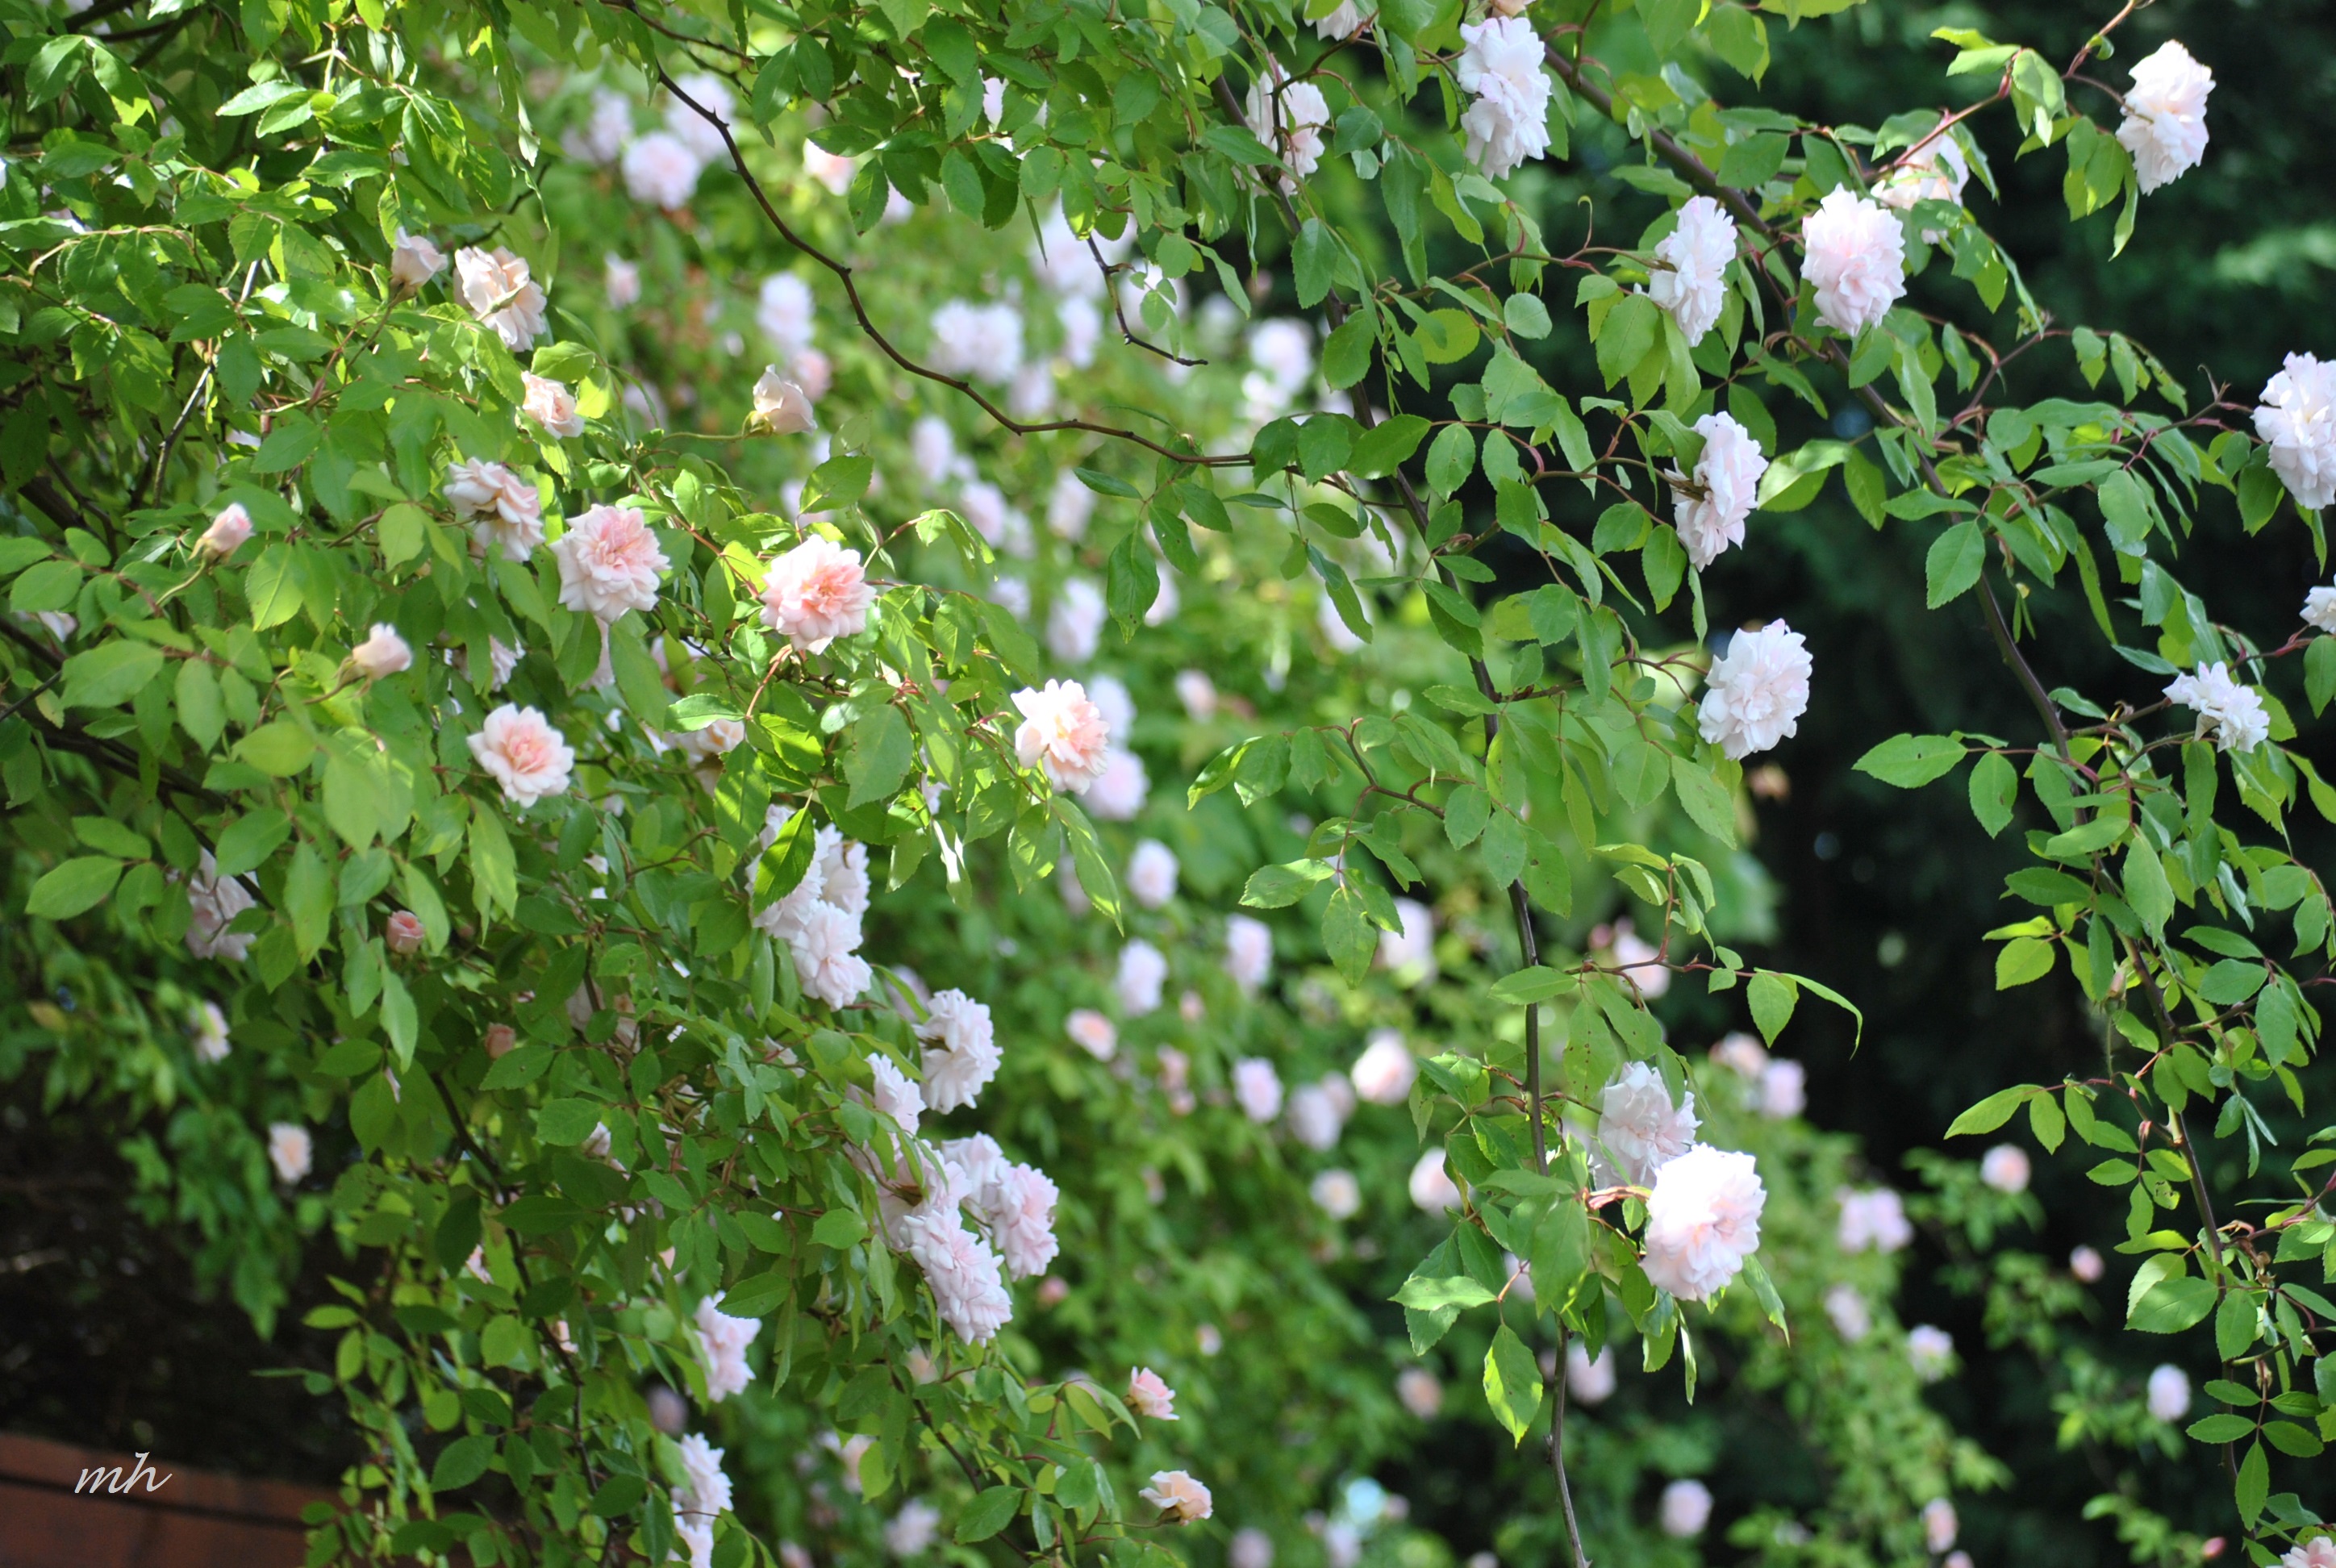 Hoa Tường Vi trắng đẹp như hoa hồng